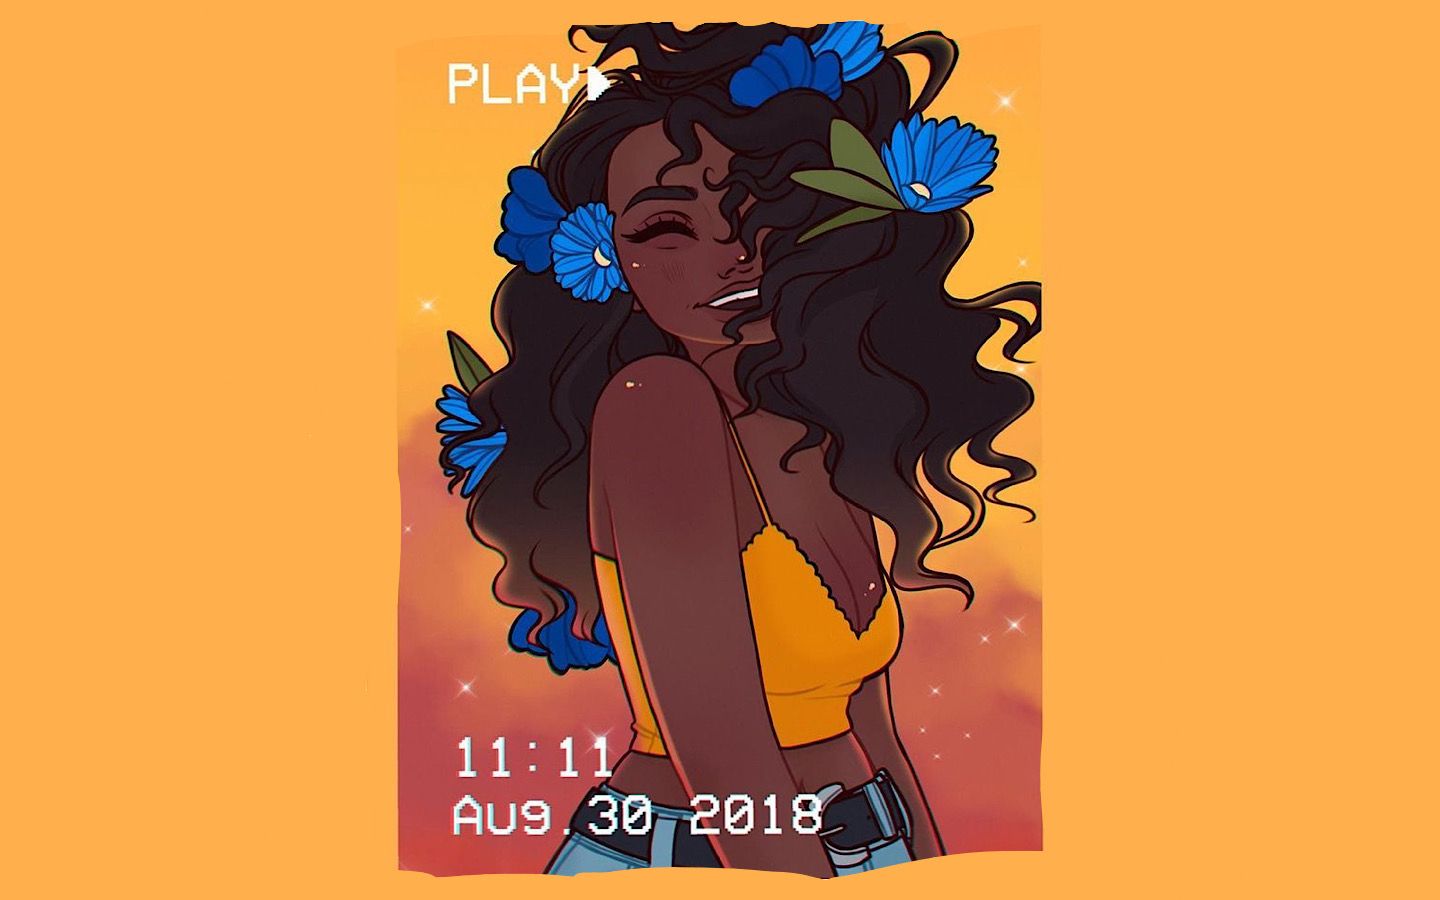 Black Girl Magic Instagram Yellow Computer Wallpaper. Black girl art, Black girl cartoon, Black girl instagram